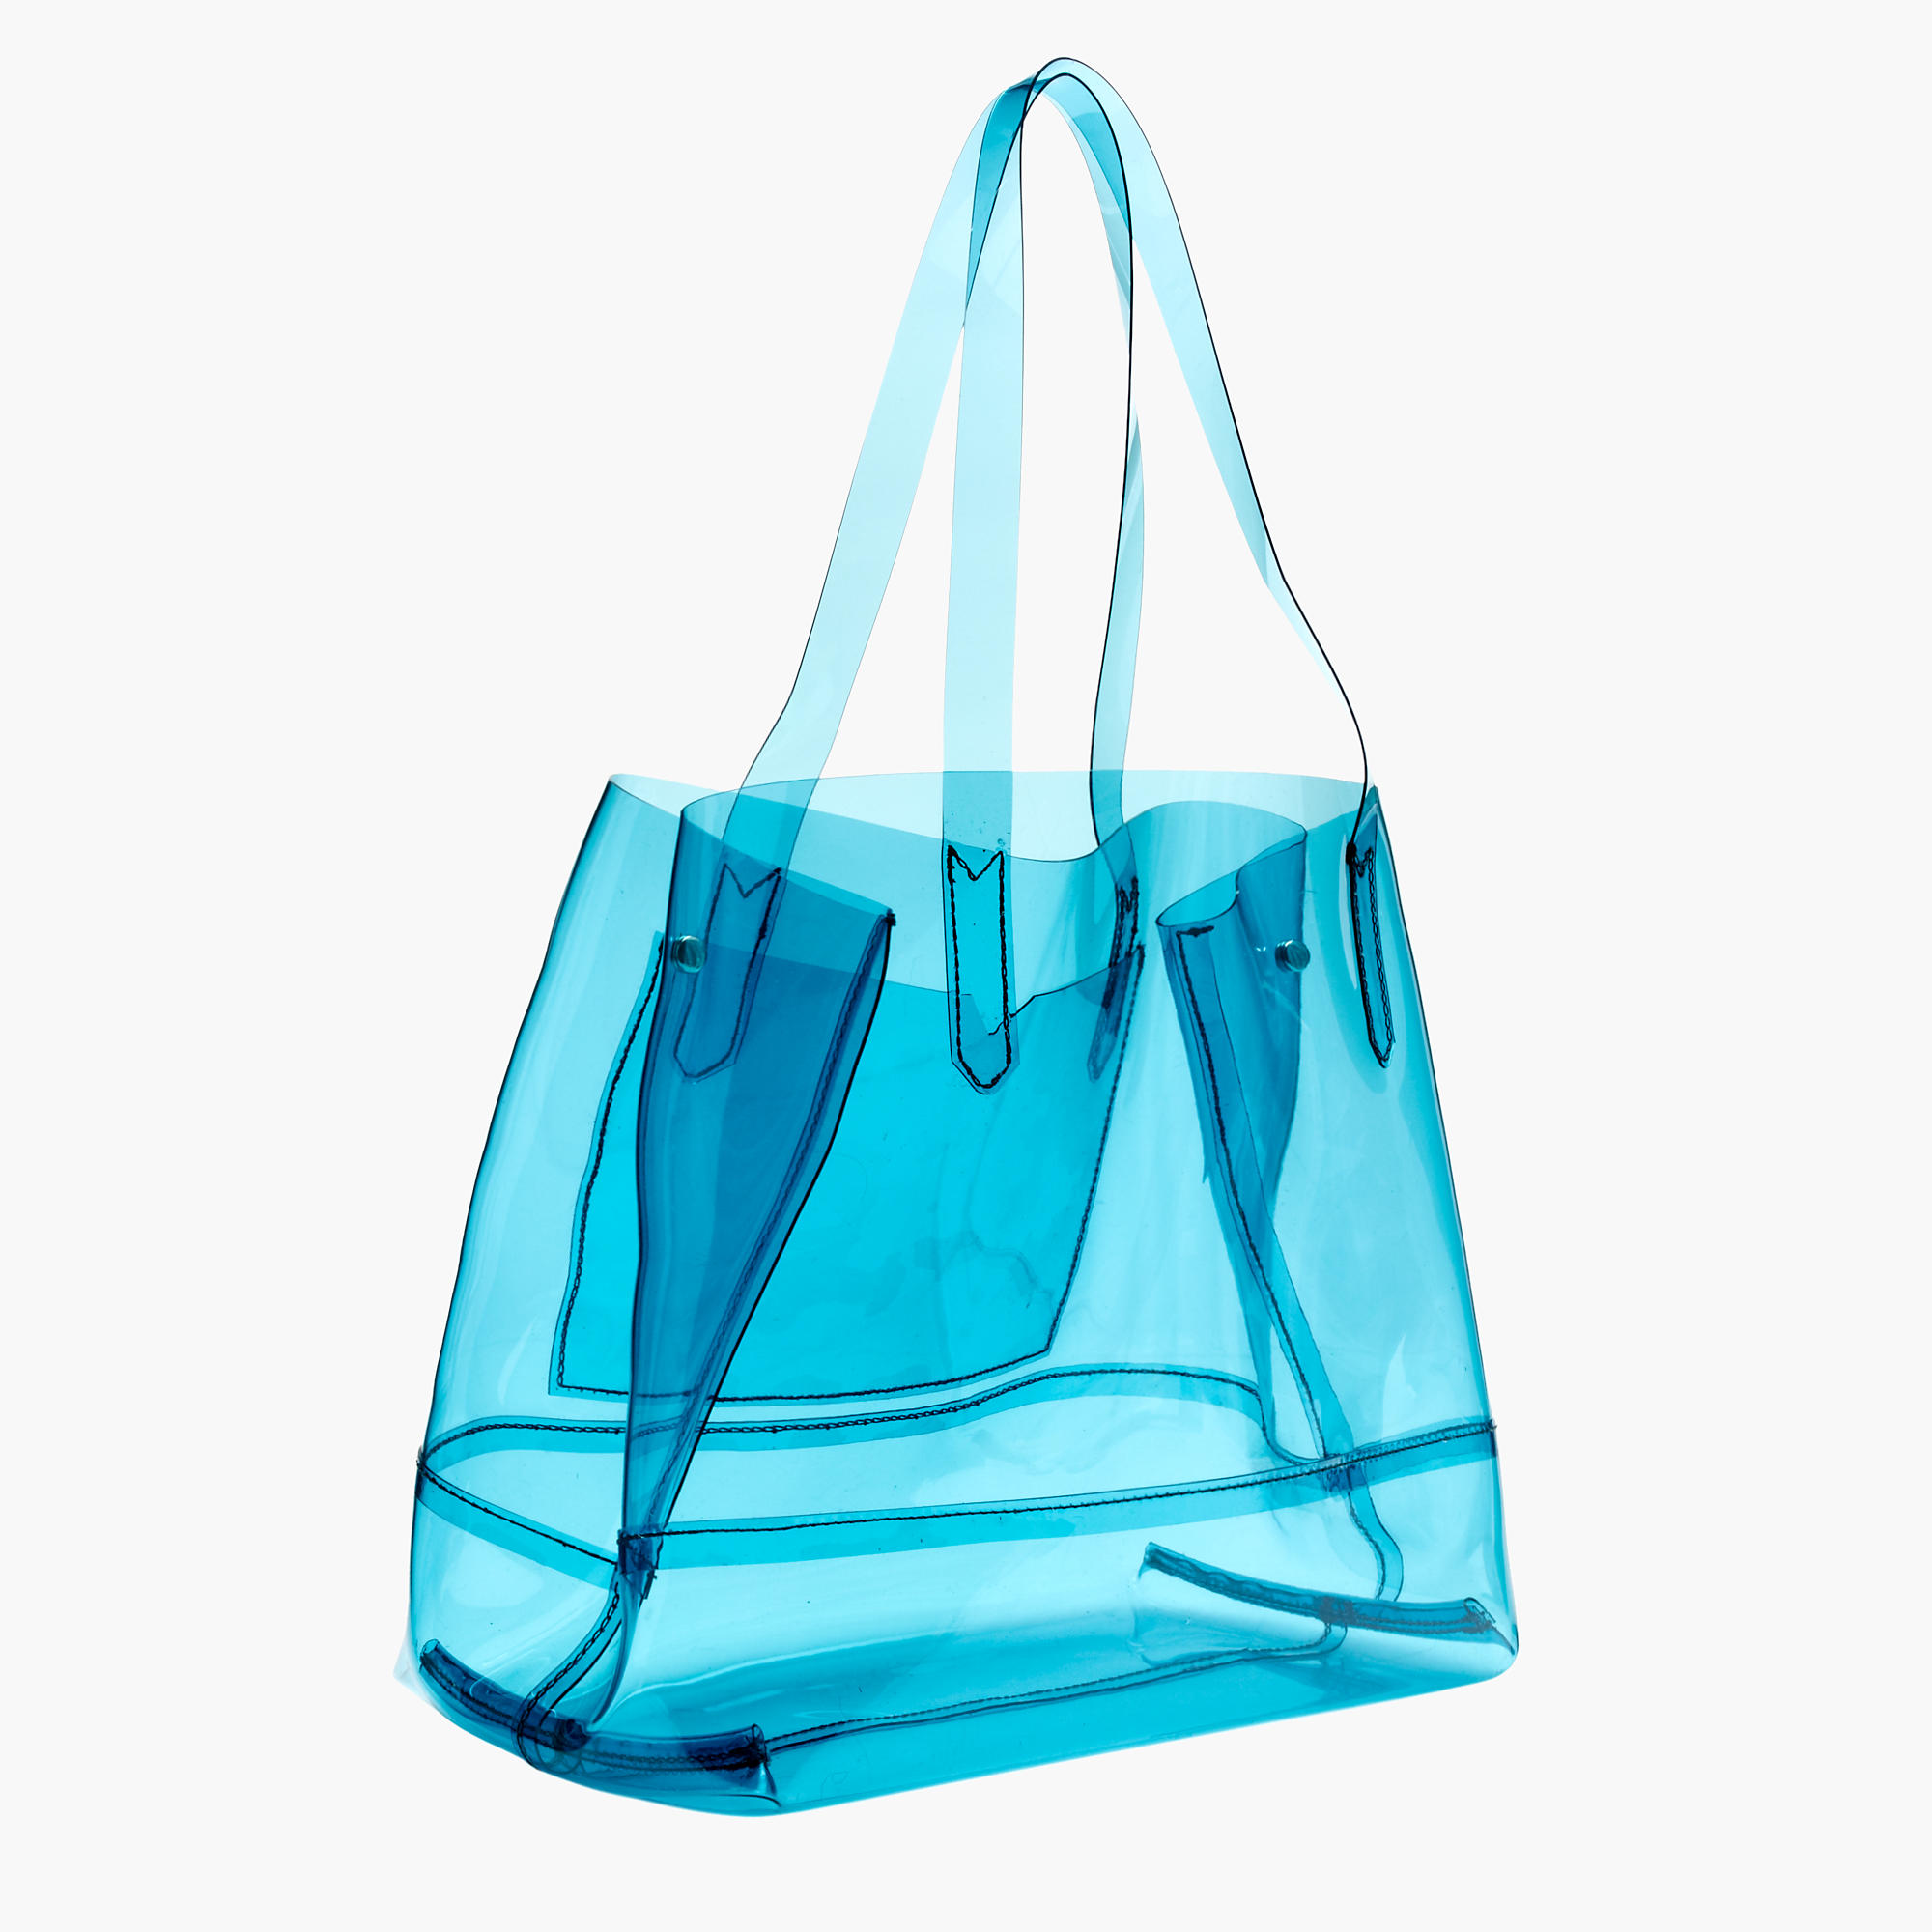 Где купить прозрачную сумку